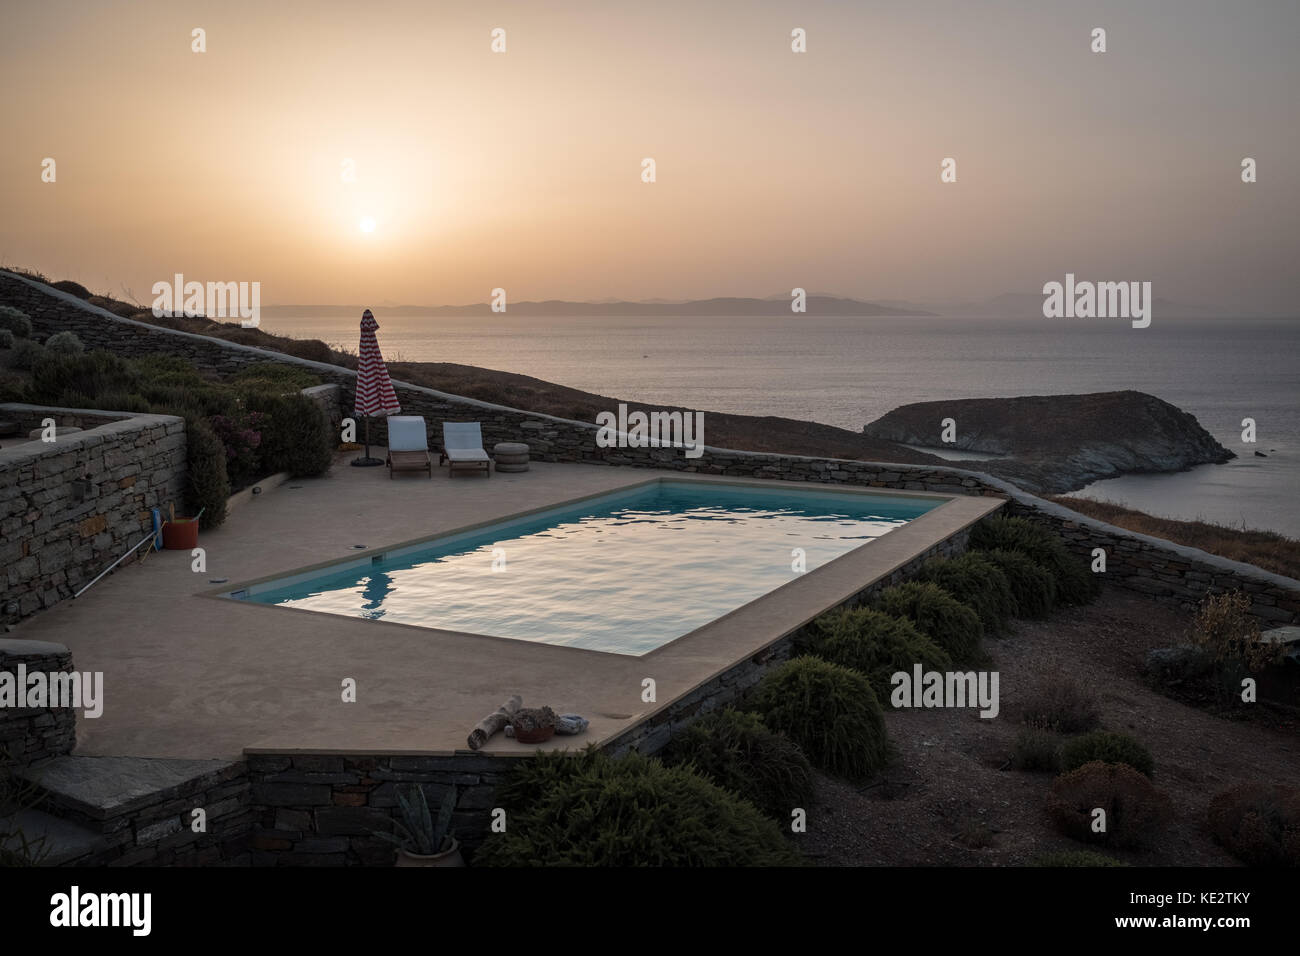 Piscine donnant sur la mer Égée au coucher du soleil, Kea, Grrece Banque D'Images